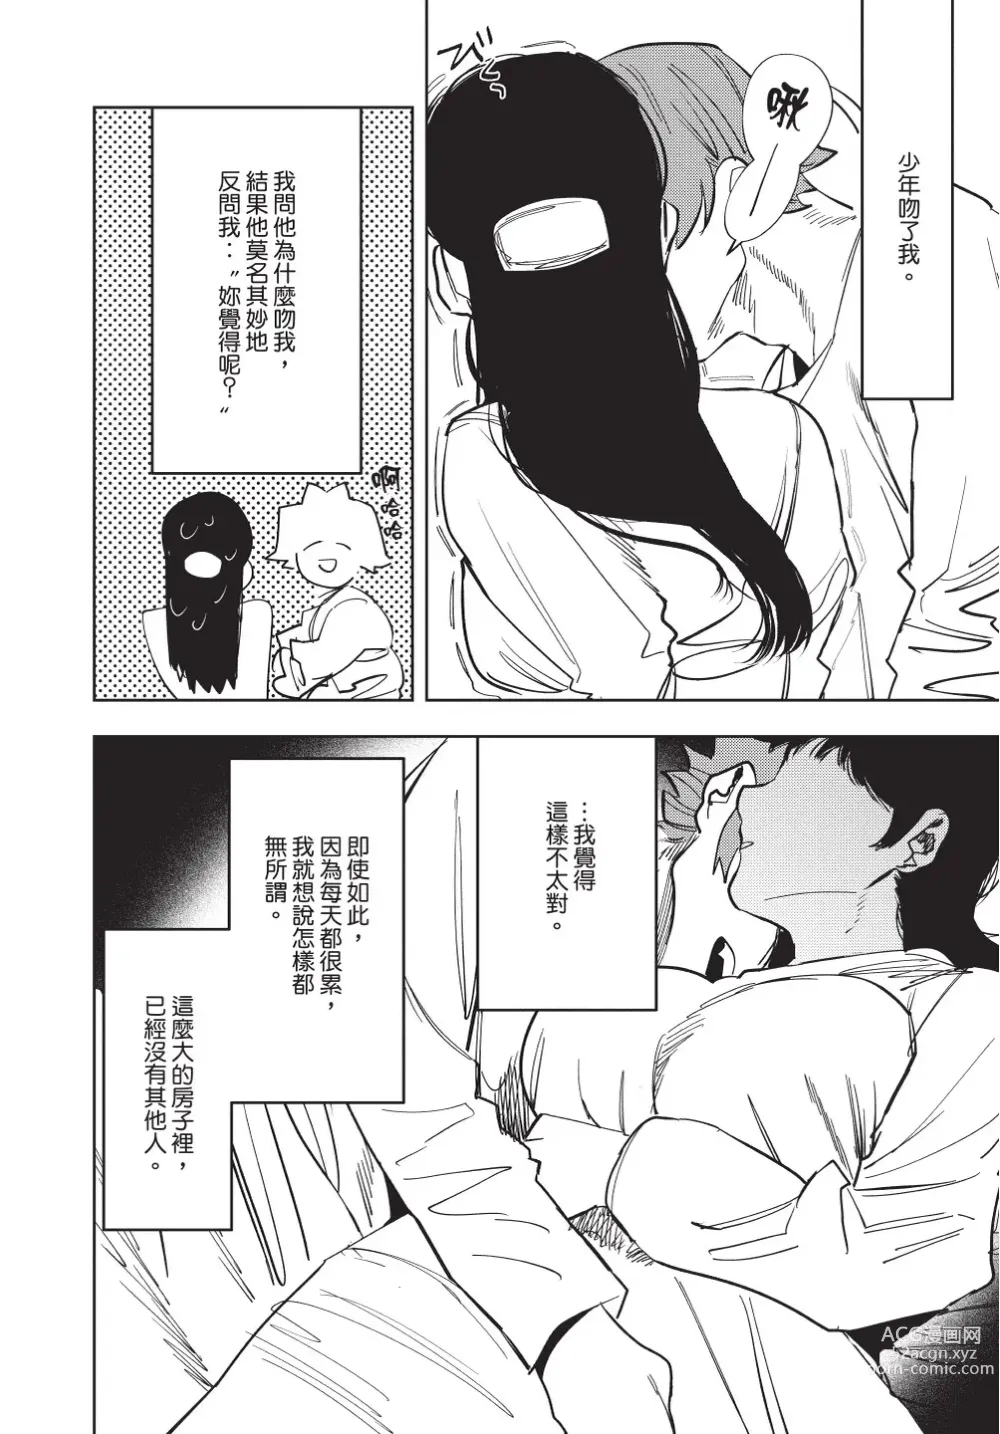 Page 202 of manga 在異世界旅途中拯救我的是一名少年殺手